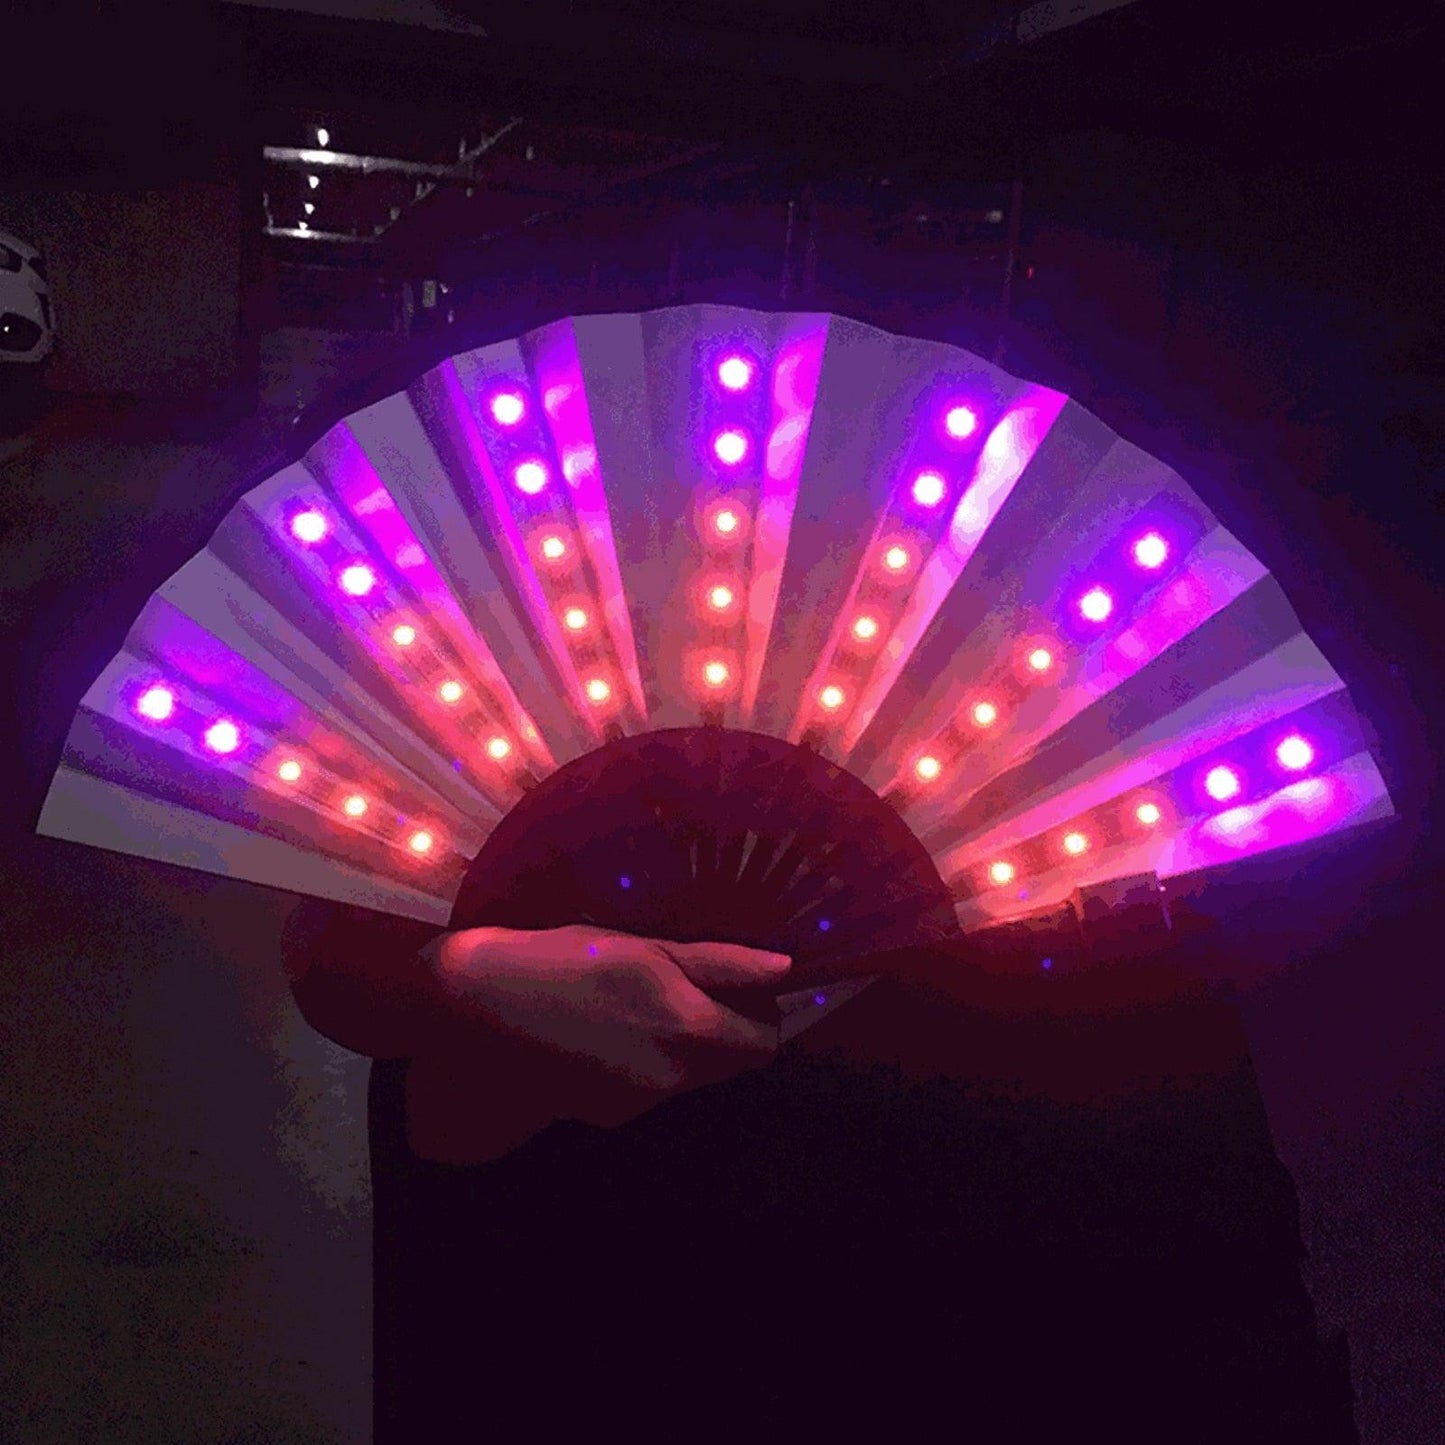 LED Hand Fan Hand Fan - The Burner Shop